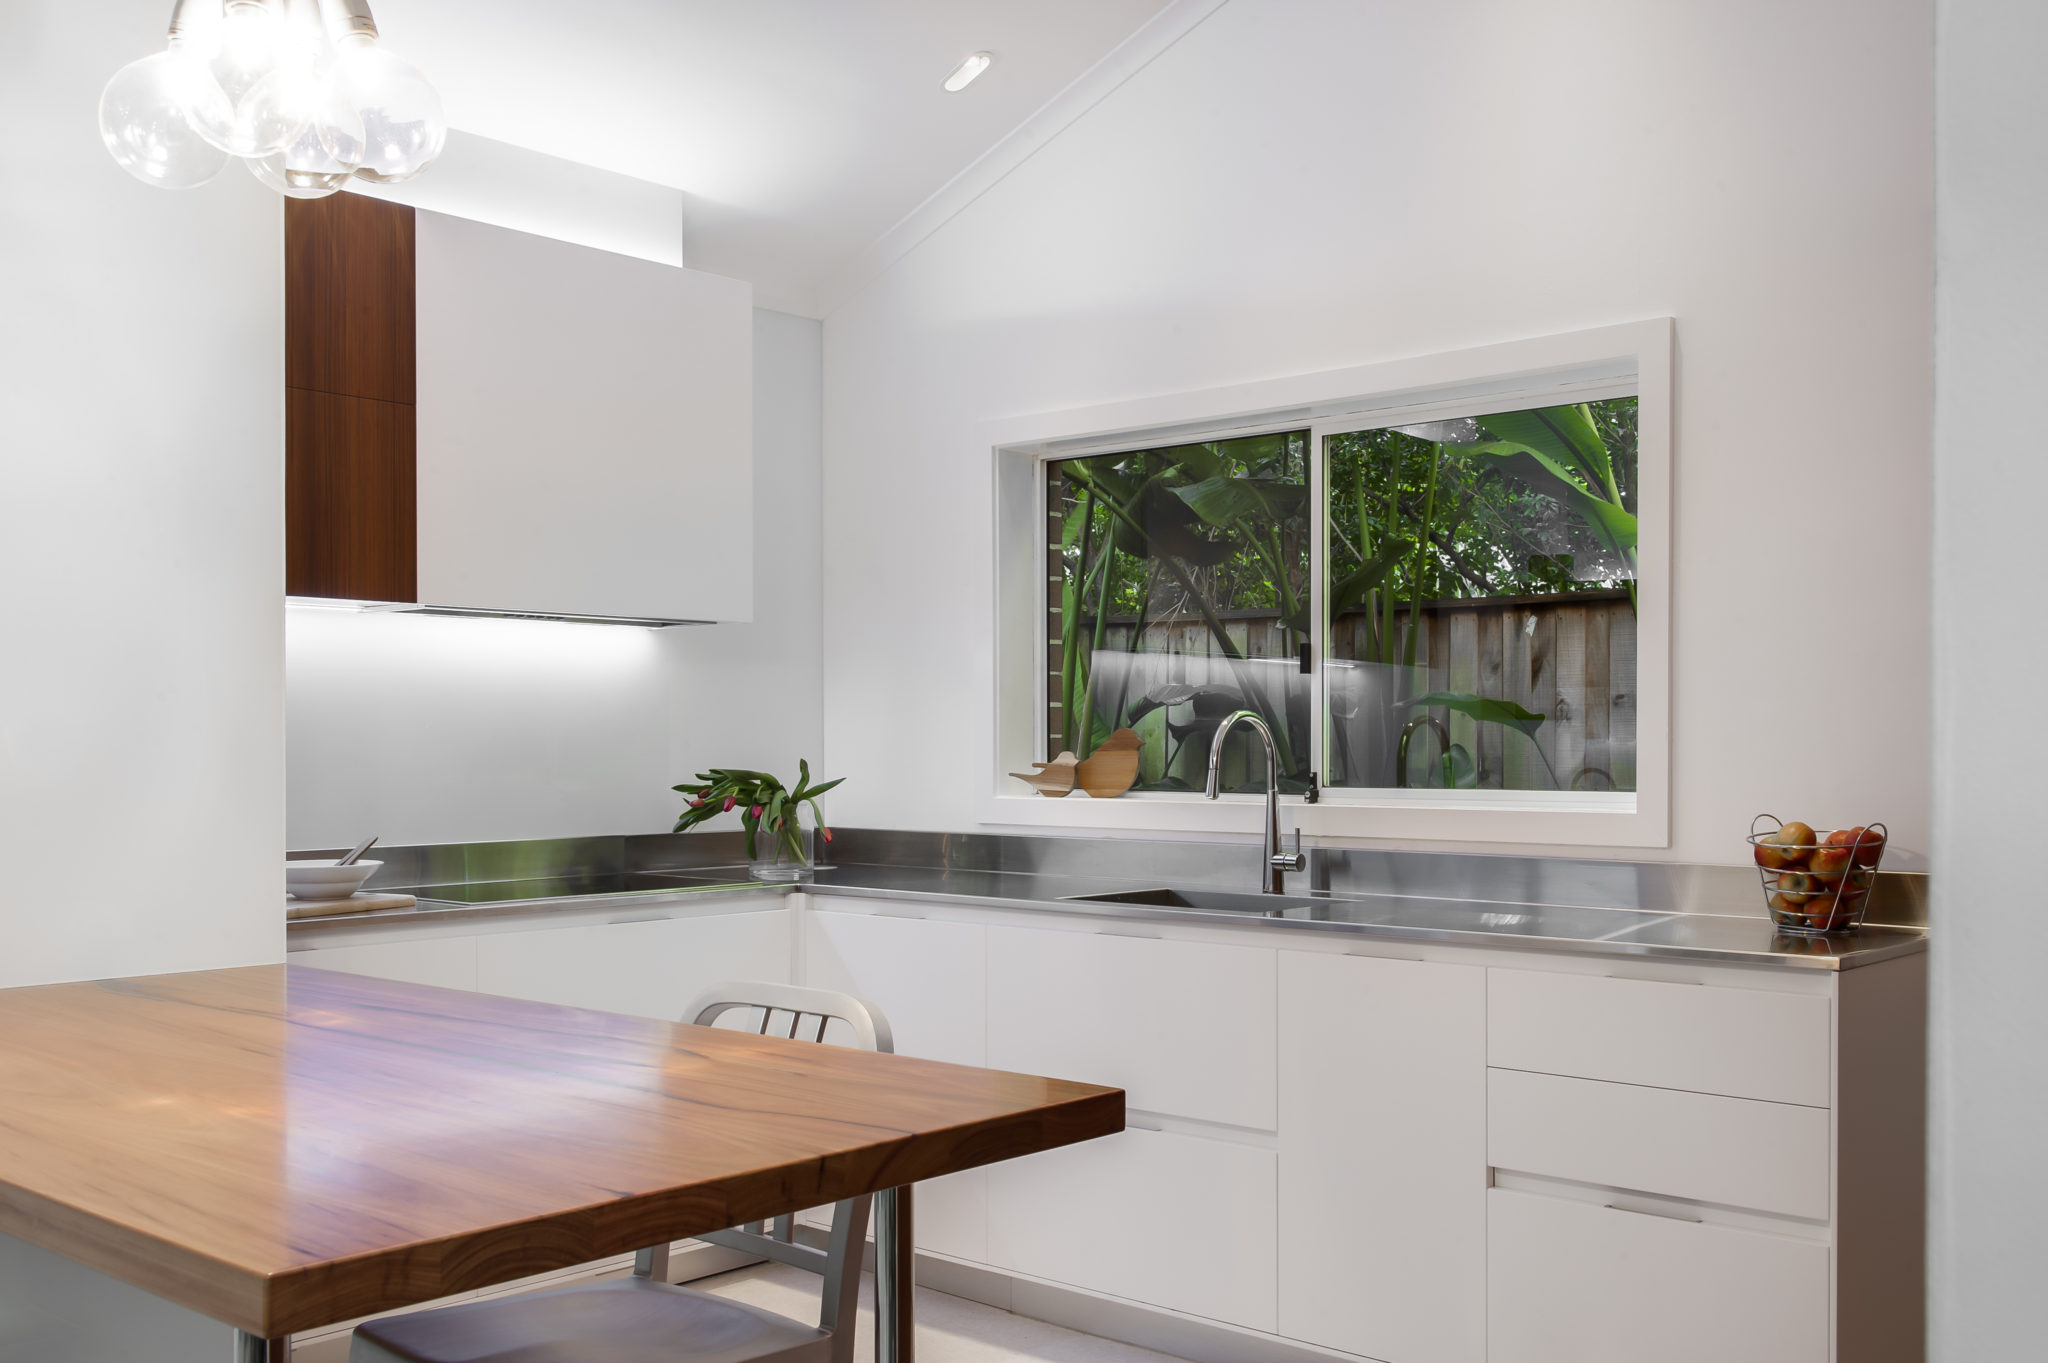 KBDI-NSW-small-kitchen-design-year-2013-darren-genner-minosa-